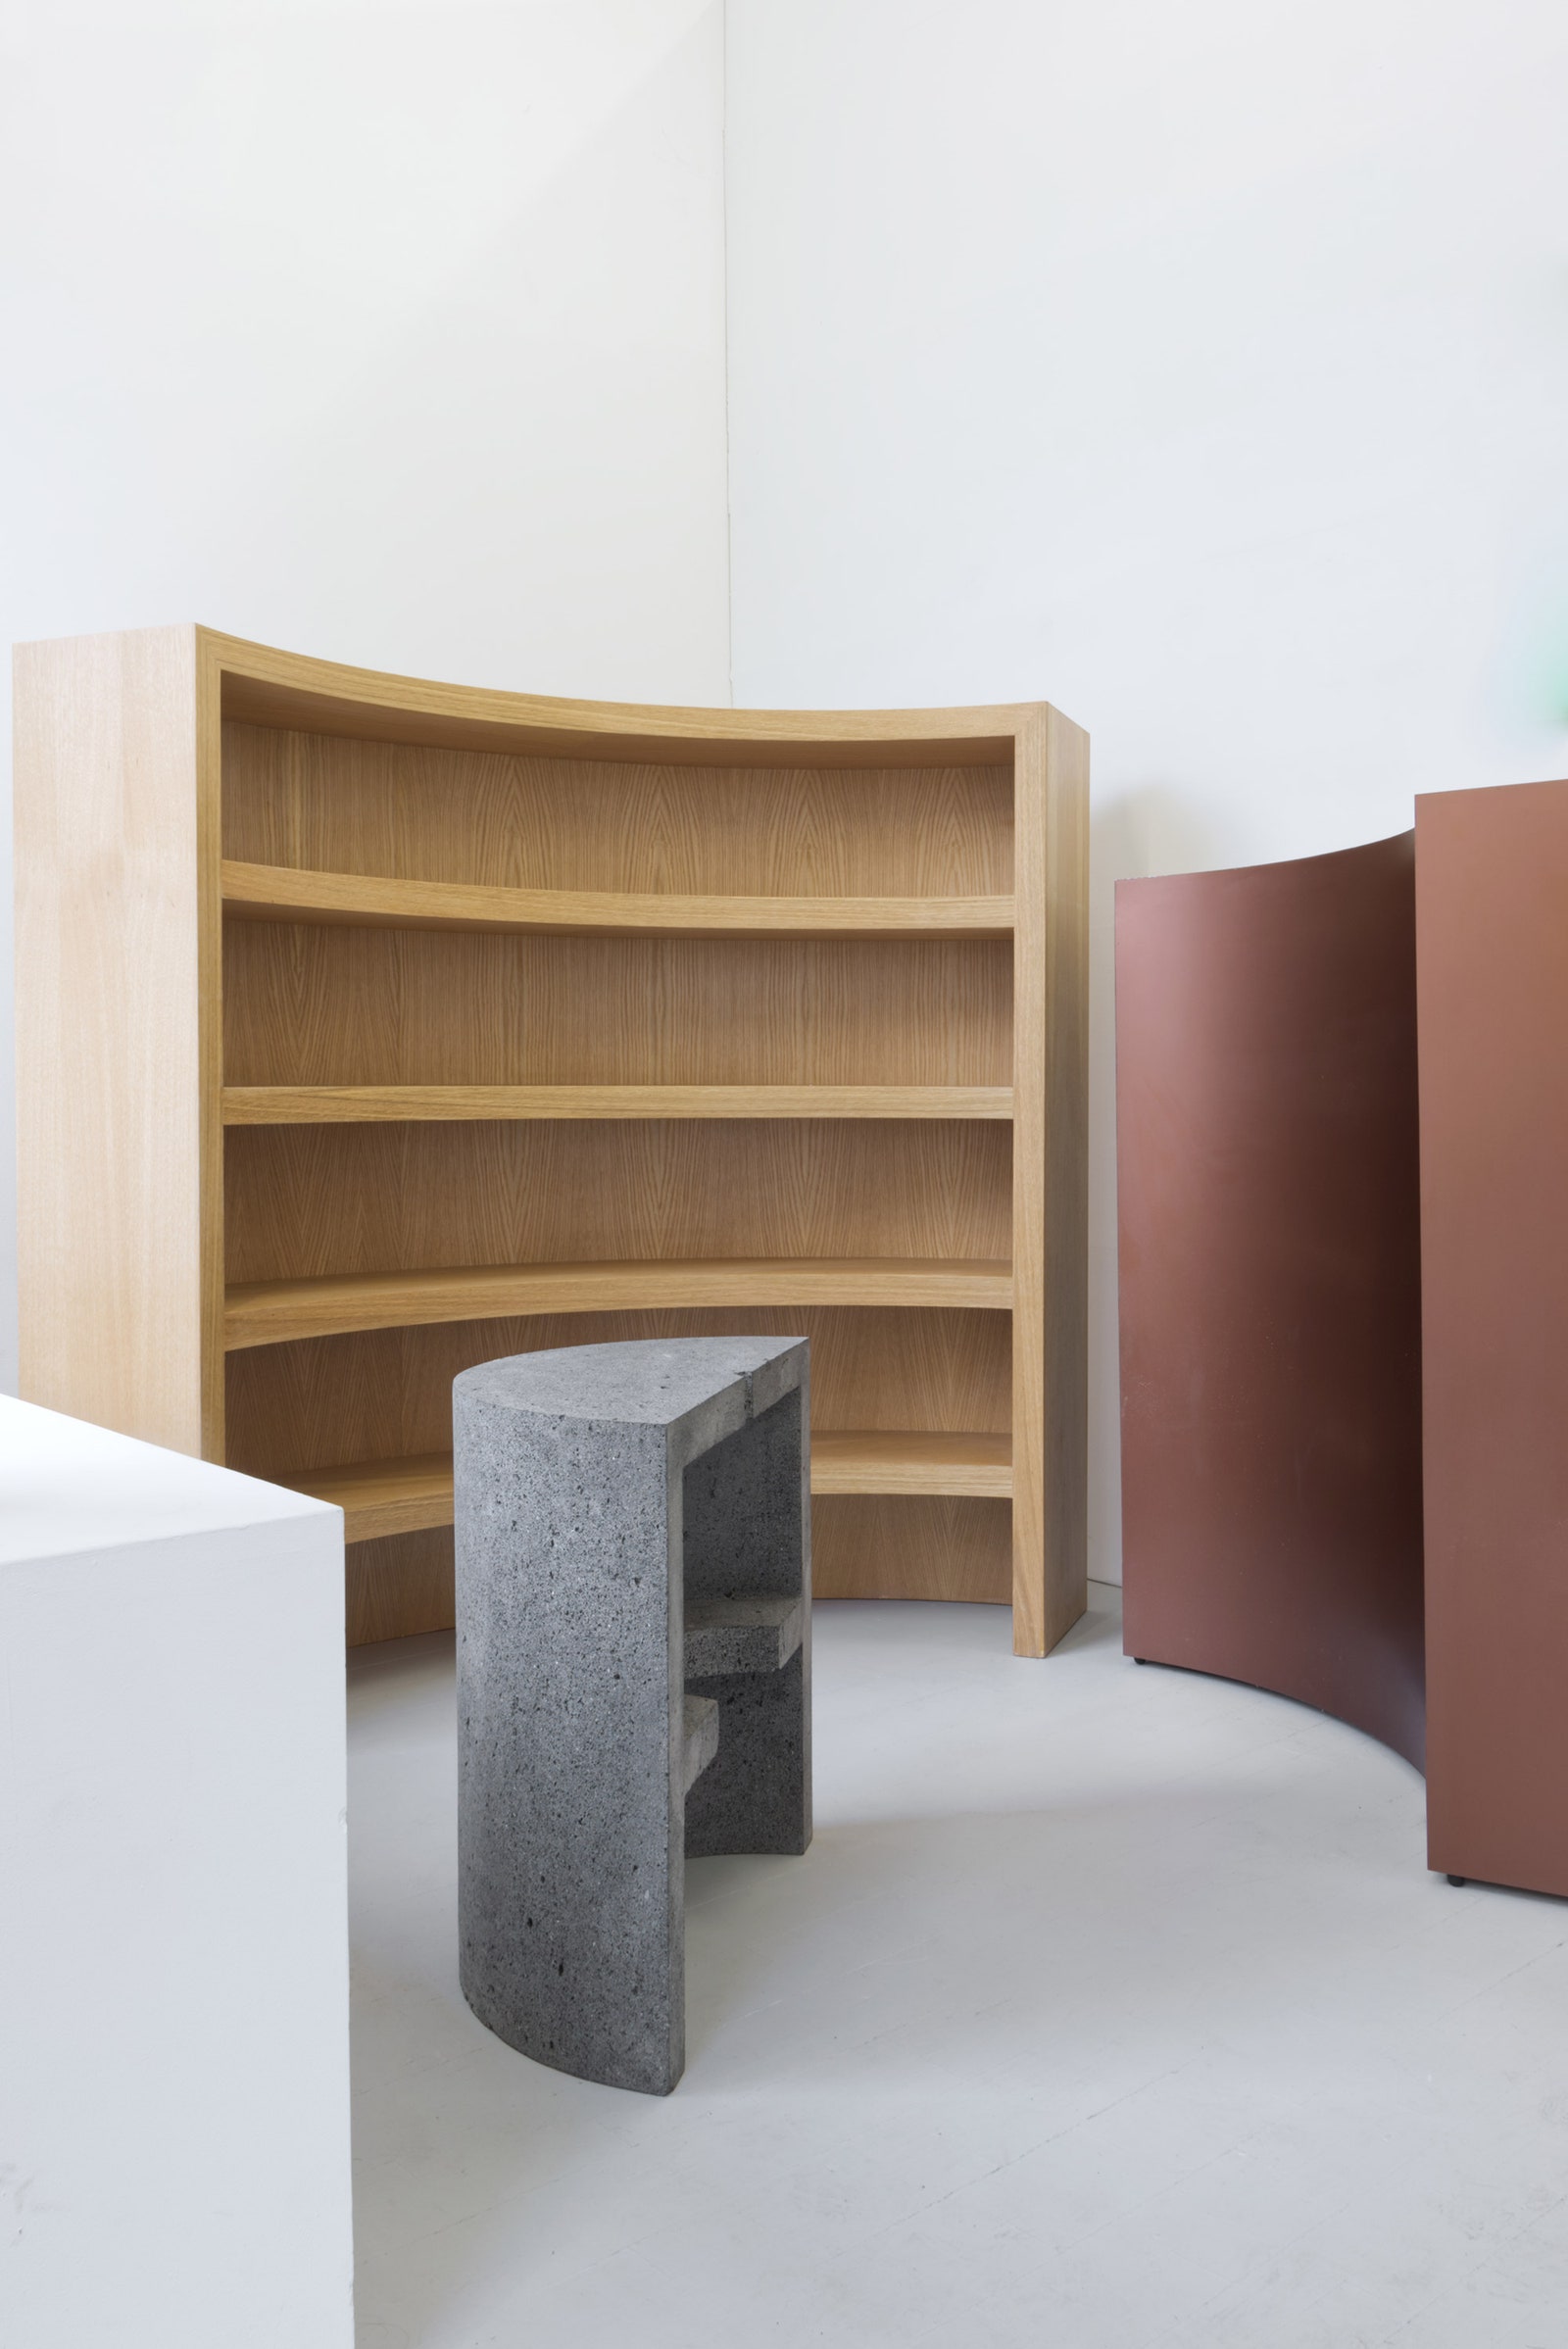 Адаптивная мебель по дизайну Татьяны Бильбао первая коллекция мексиканского дизайнера